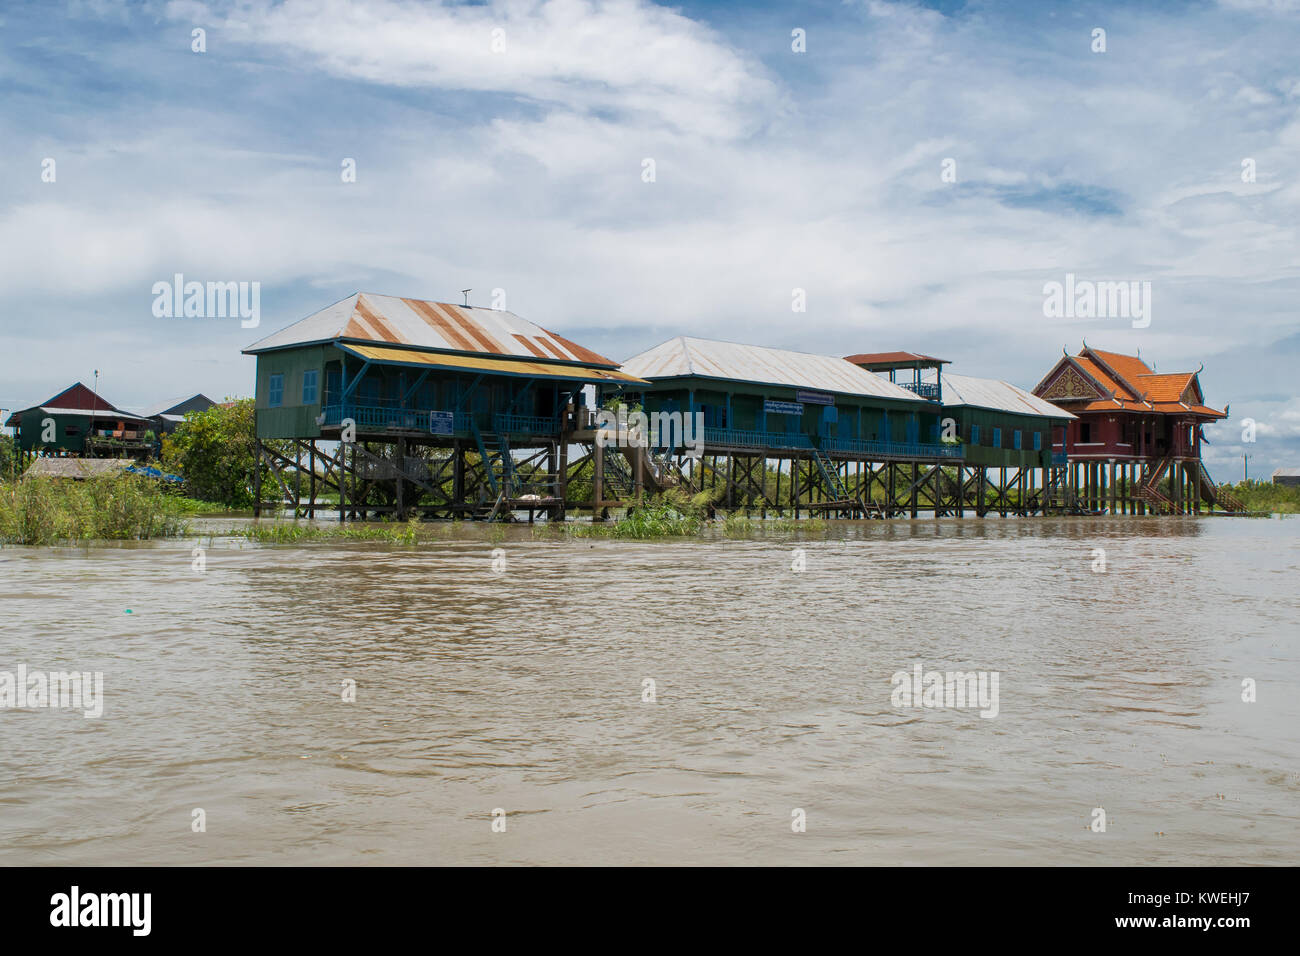 Bâtiments, maisons sur pilotis, flottante, sur la rivière Tonle Sap lake, dans la région de Kampong Phluk village, Siem Reap, Cambodge, Asie du sud-est Banque D'Images